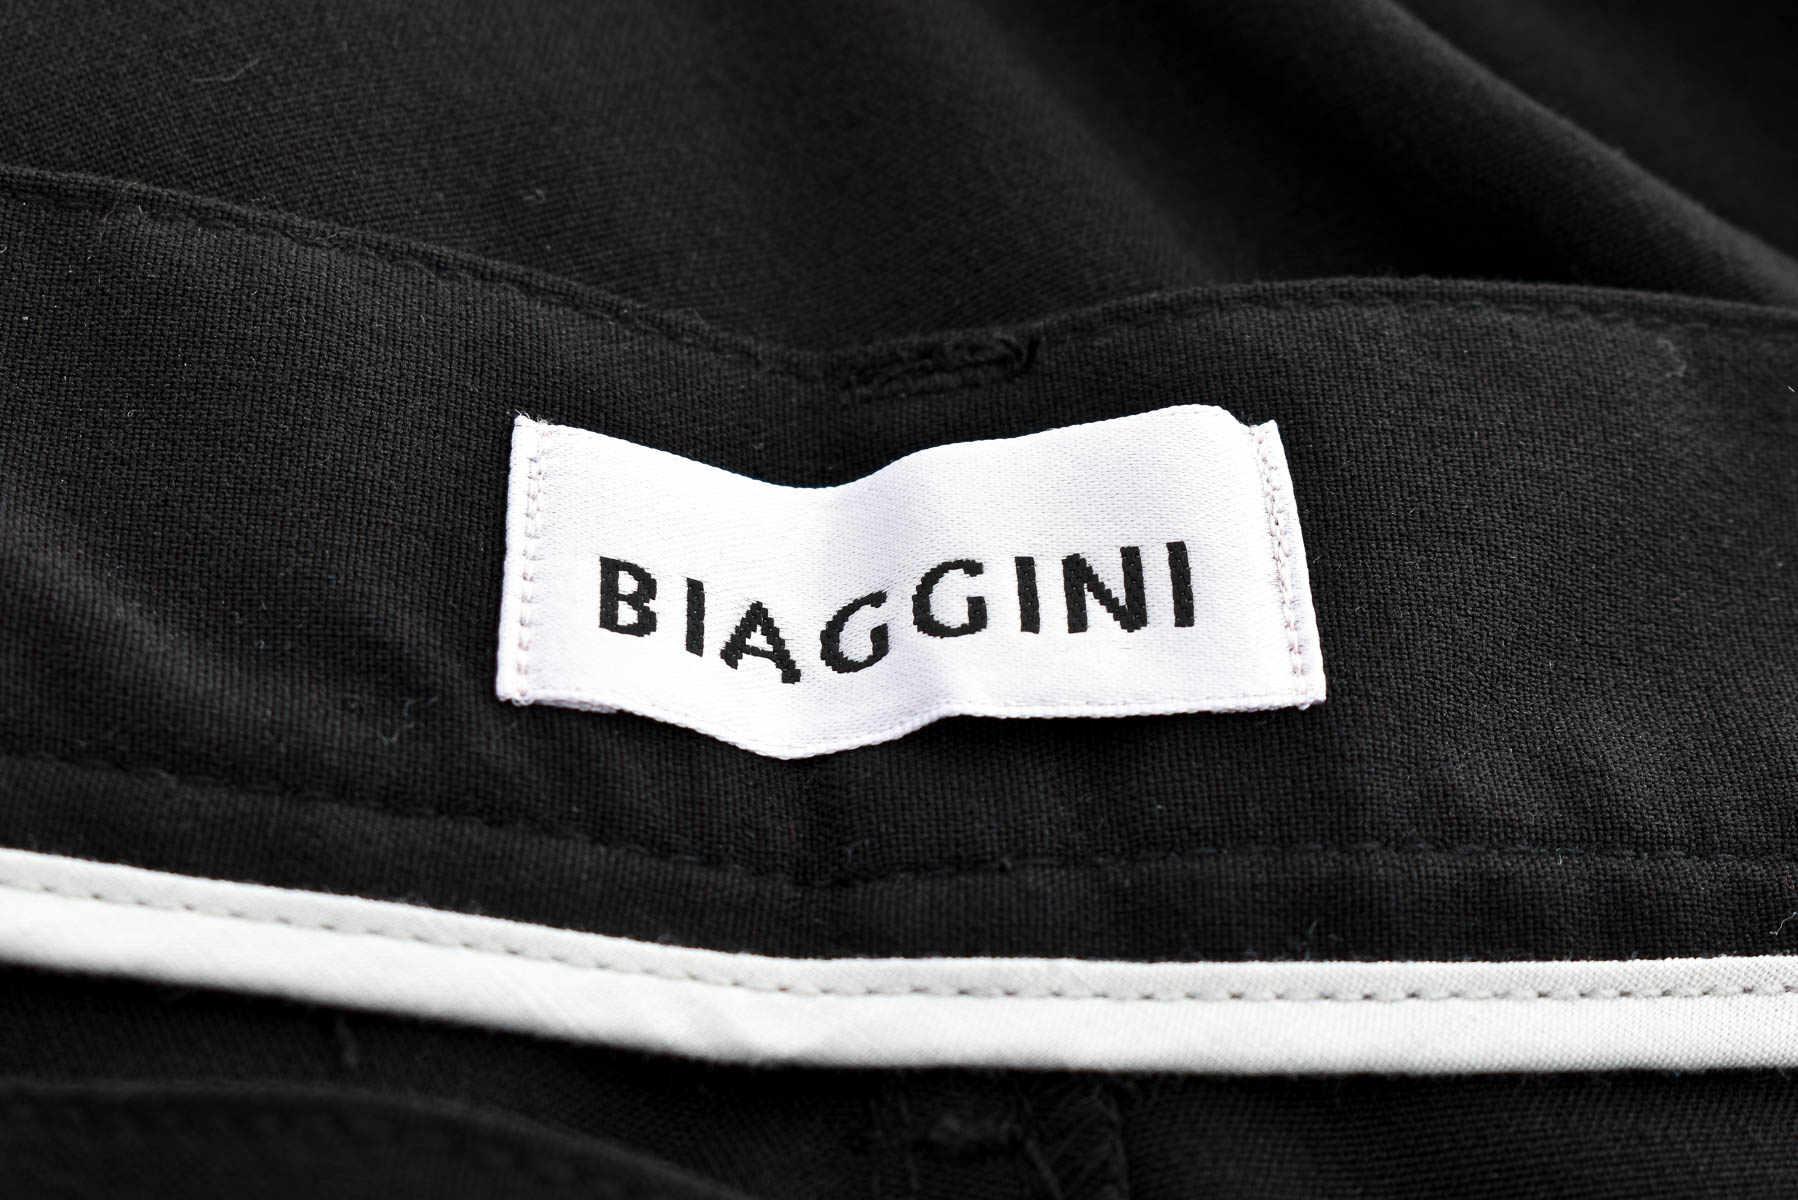 Pantalon pentru bărbați - BIAGGINI - 2